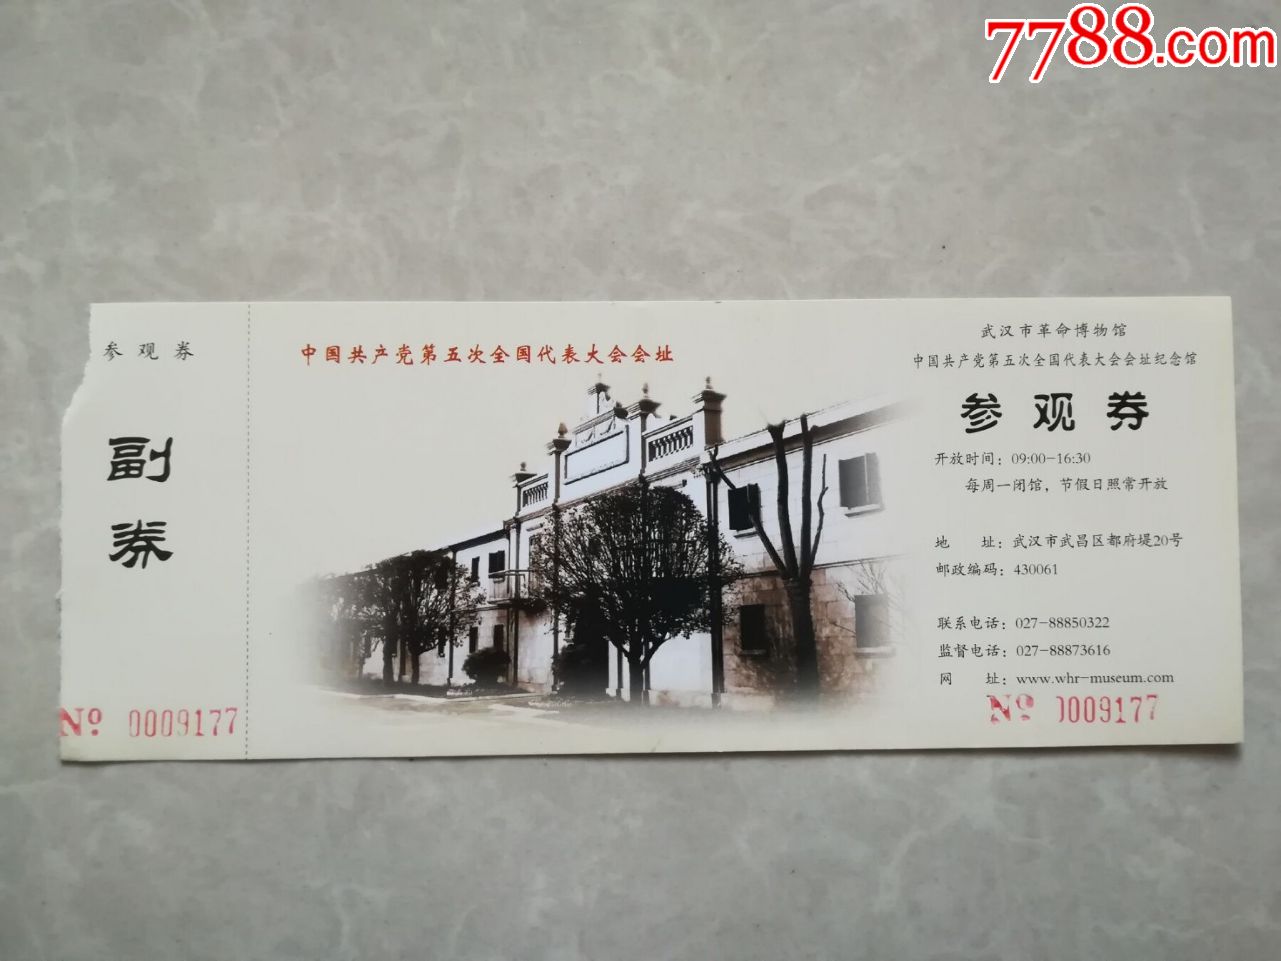 武汉市革命博物馆_旅游景点门票_纸海撷贝【7788收藏